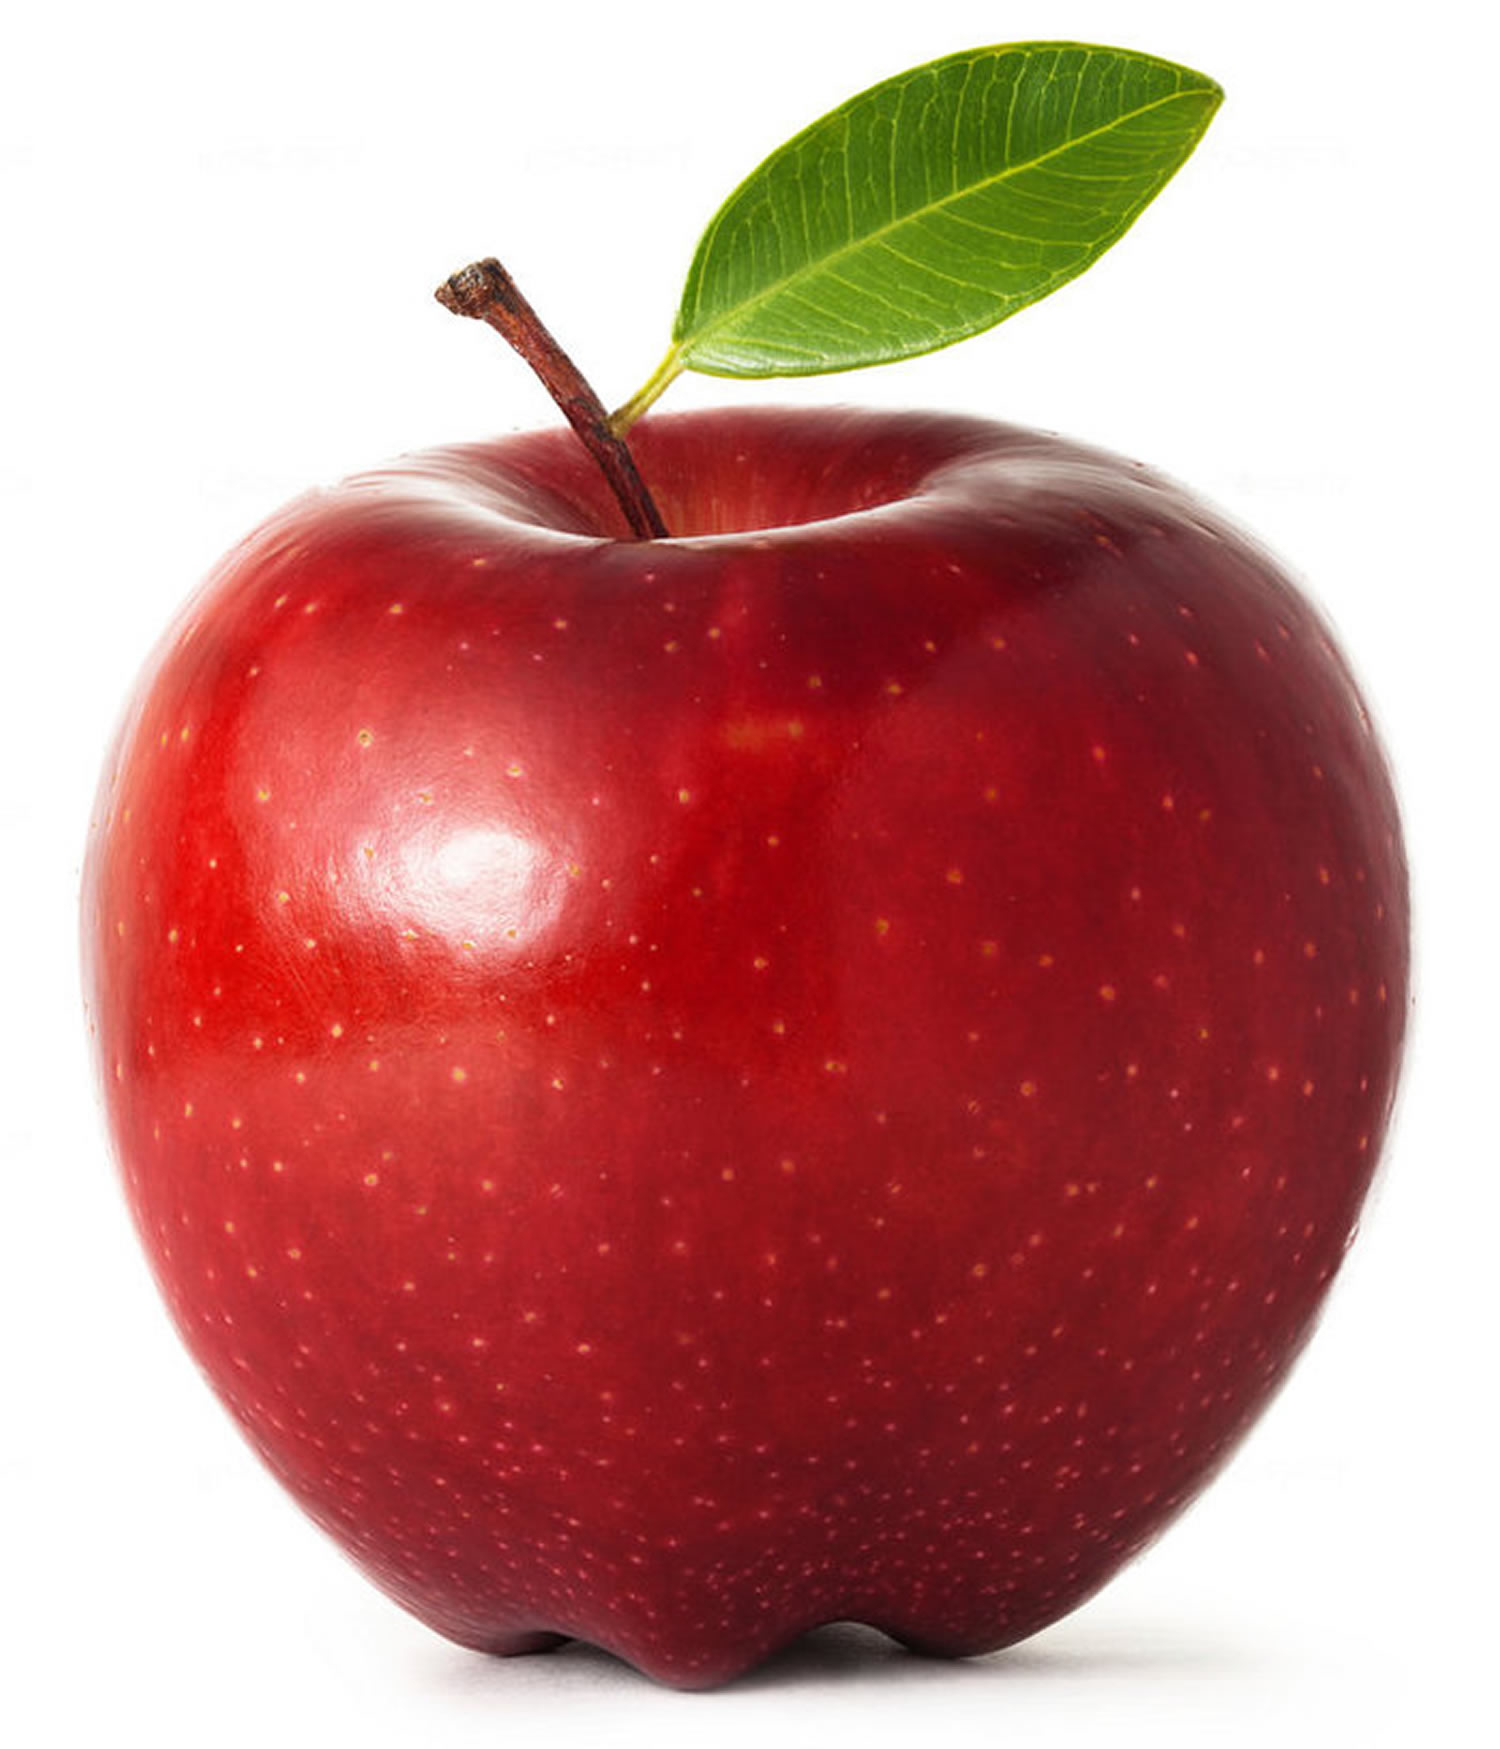 McIntosh (apple) - Wikipedia